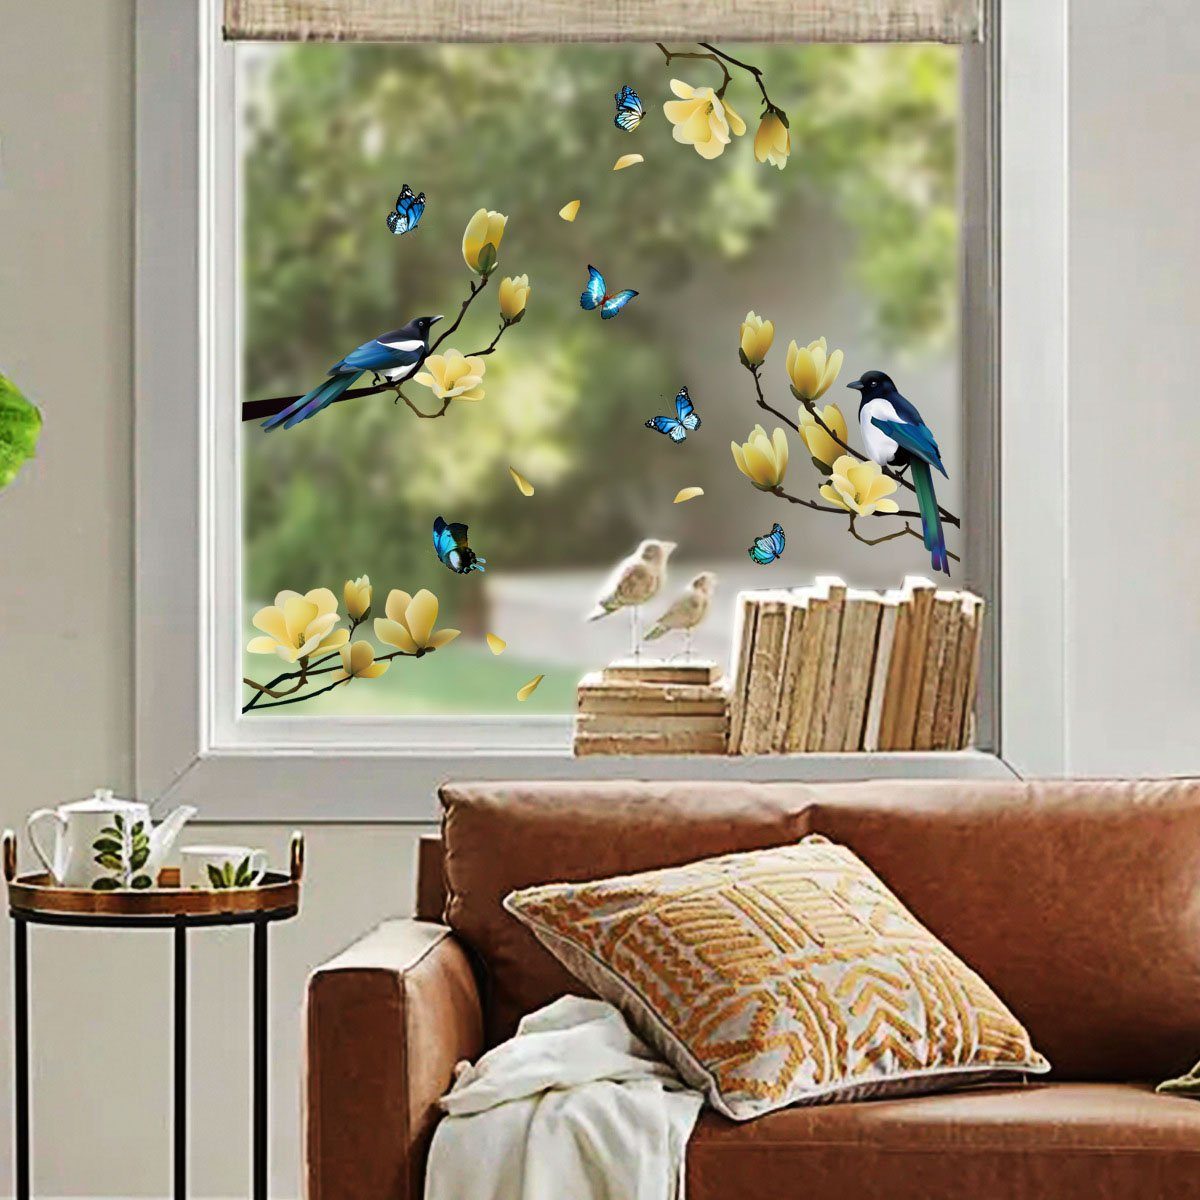 Juoungle Fensterbild 2 Statische set Fensteraufkleber,Frühlingsblume,Vogel,Schmetterling